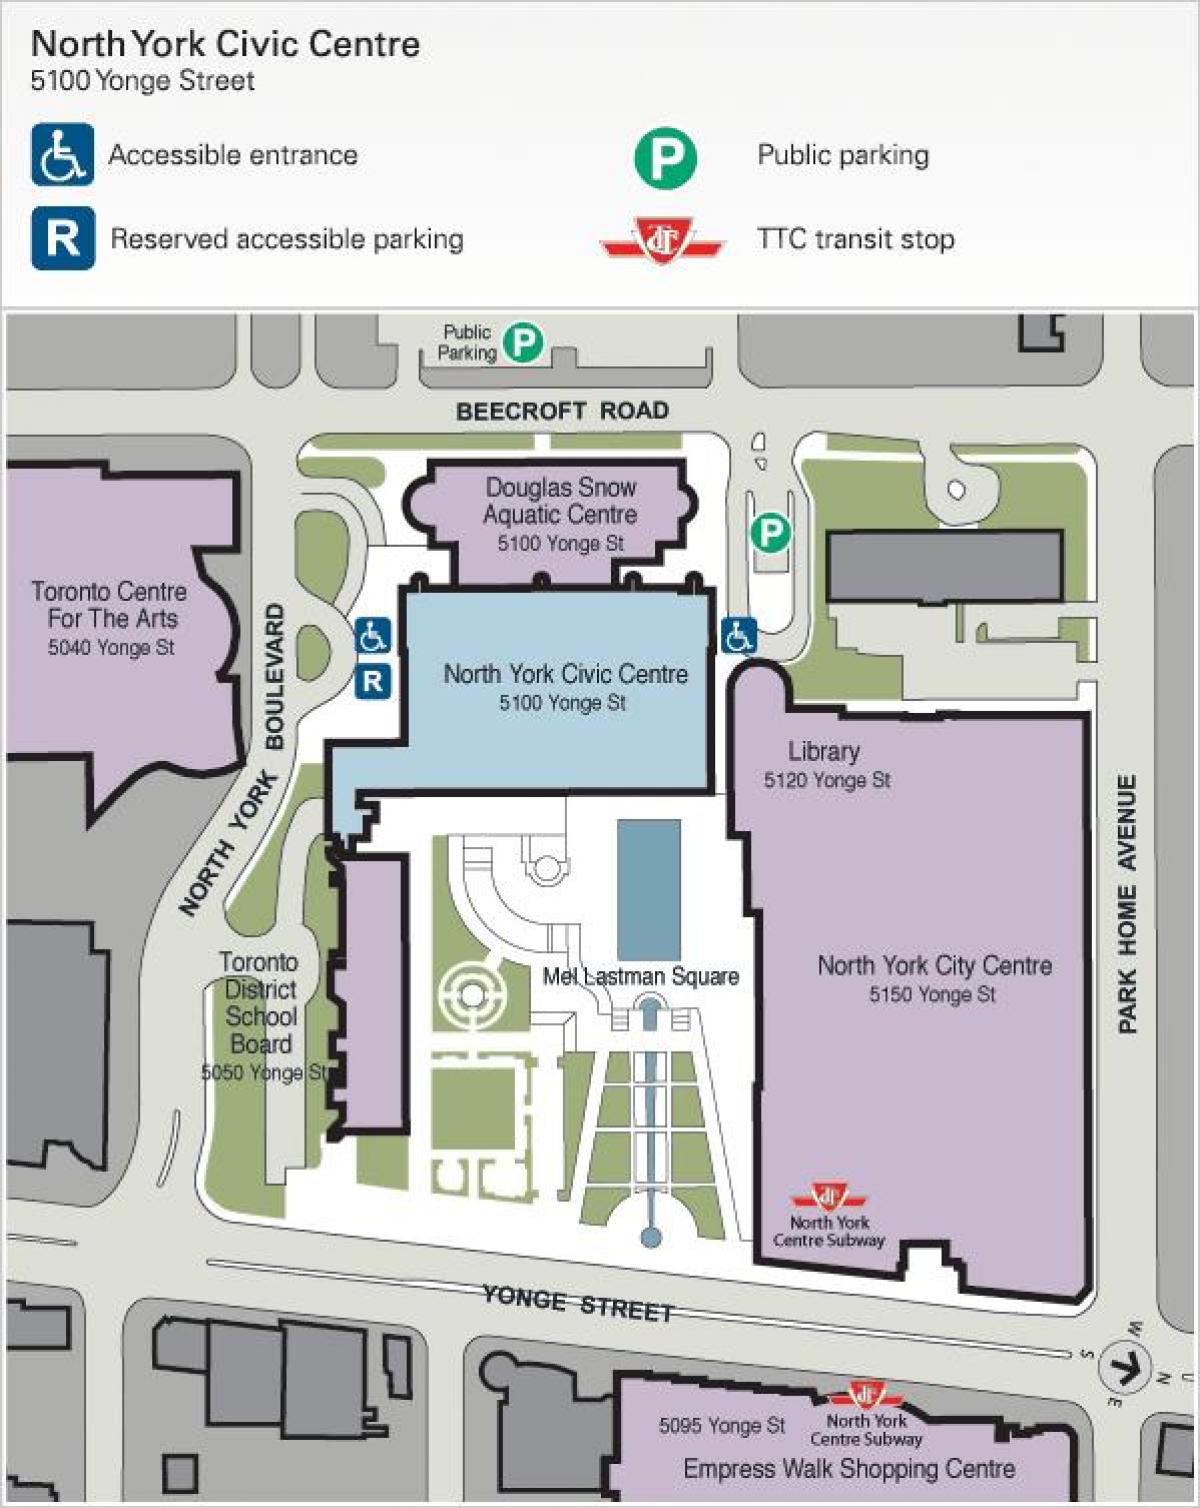 Kaart van Toronto Sentrum vir die Kunste parkering